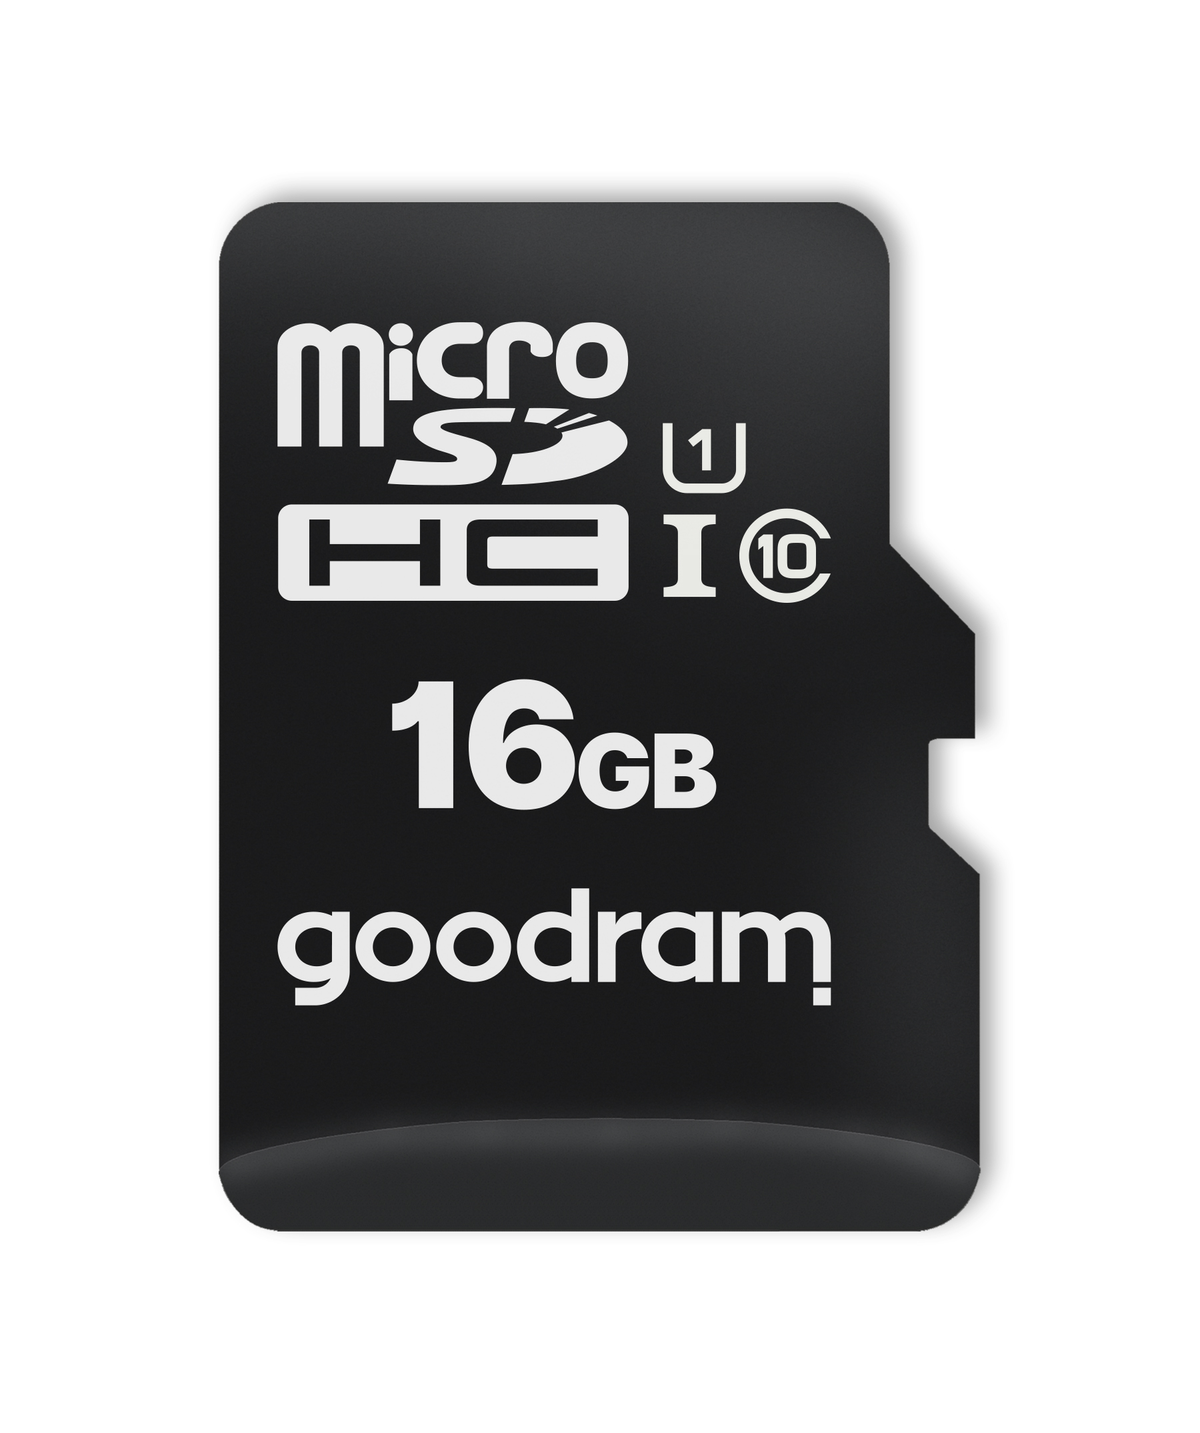 GOODRAM M1A0-0160R12, Micro-SD, Micro-SDHC, SD Speicherkarte, 100 GB, MB/s 16 SDHC